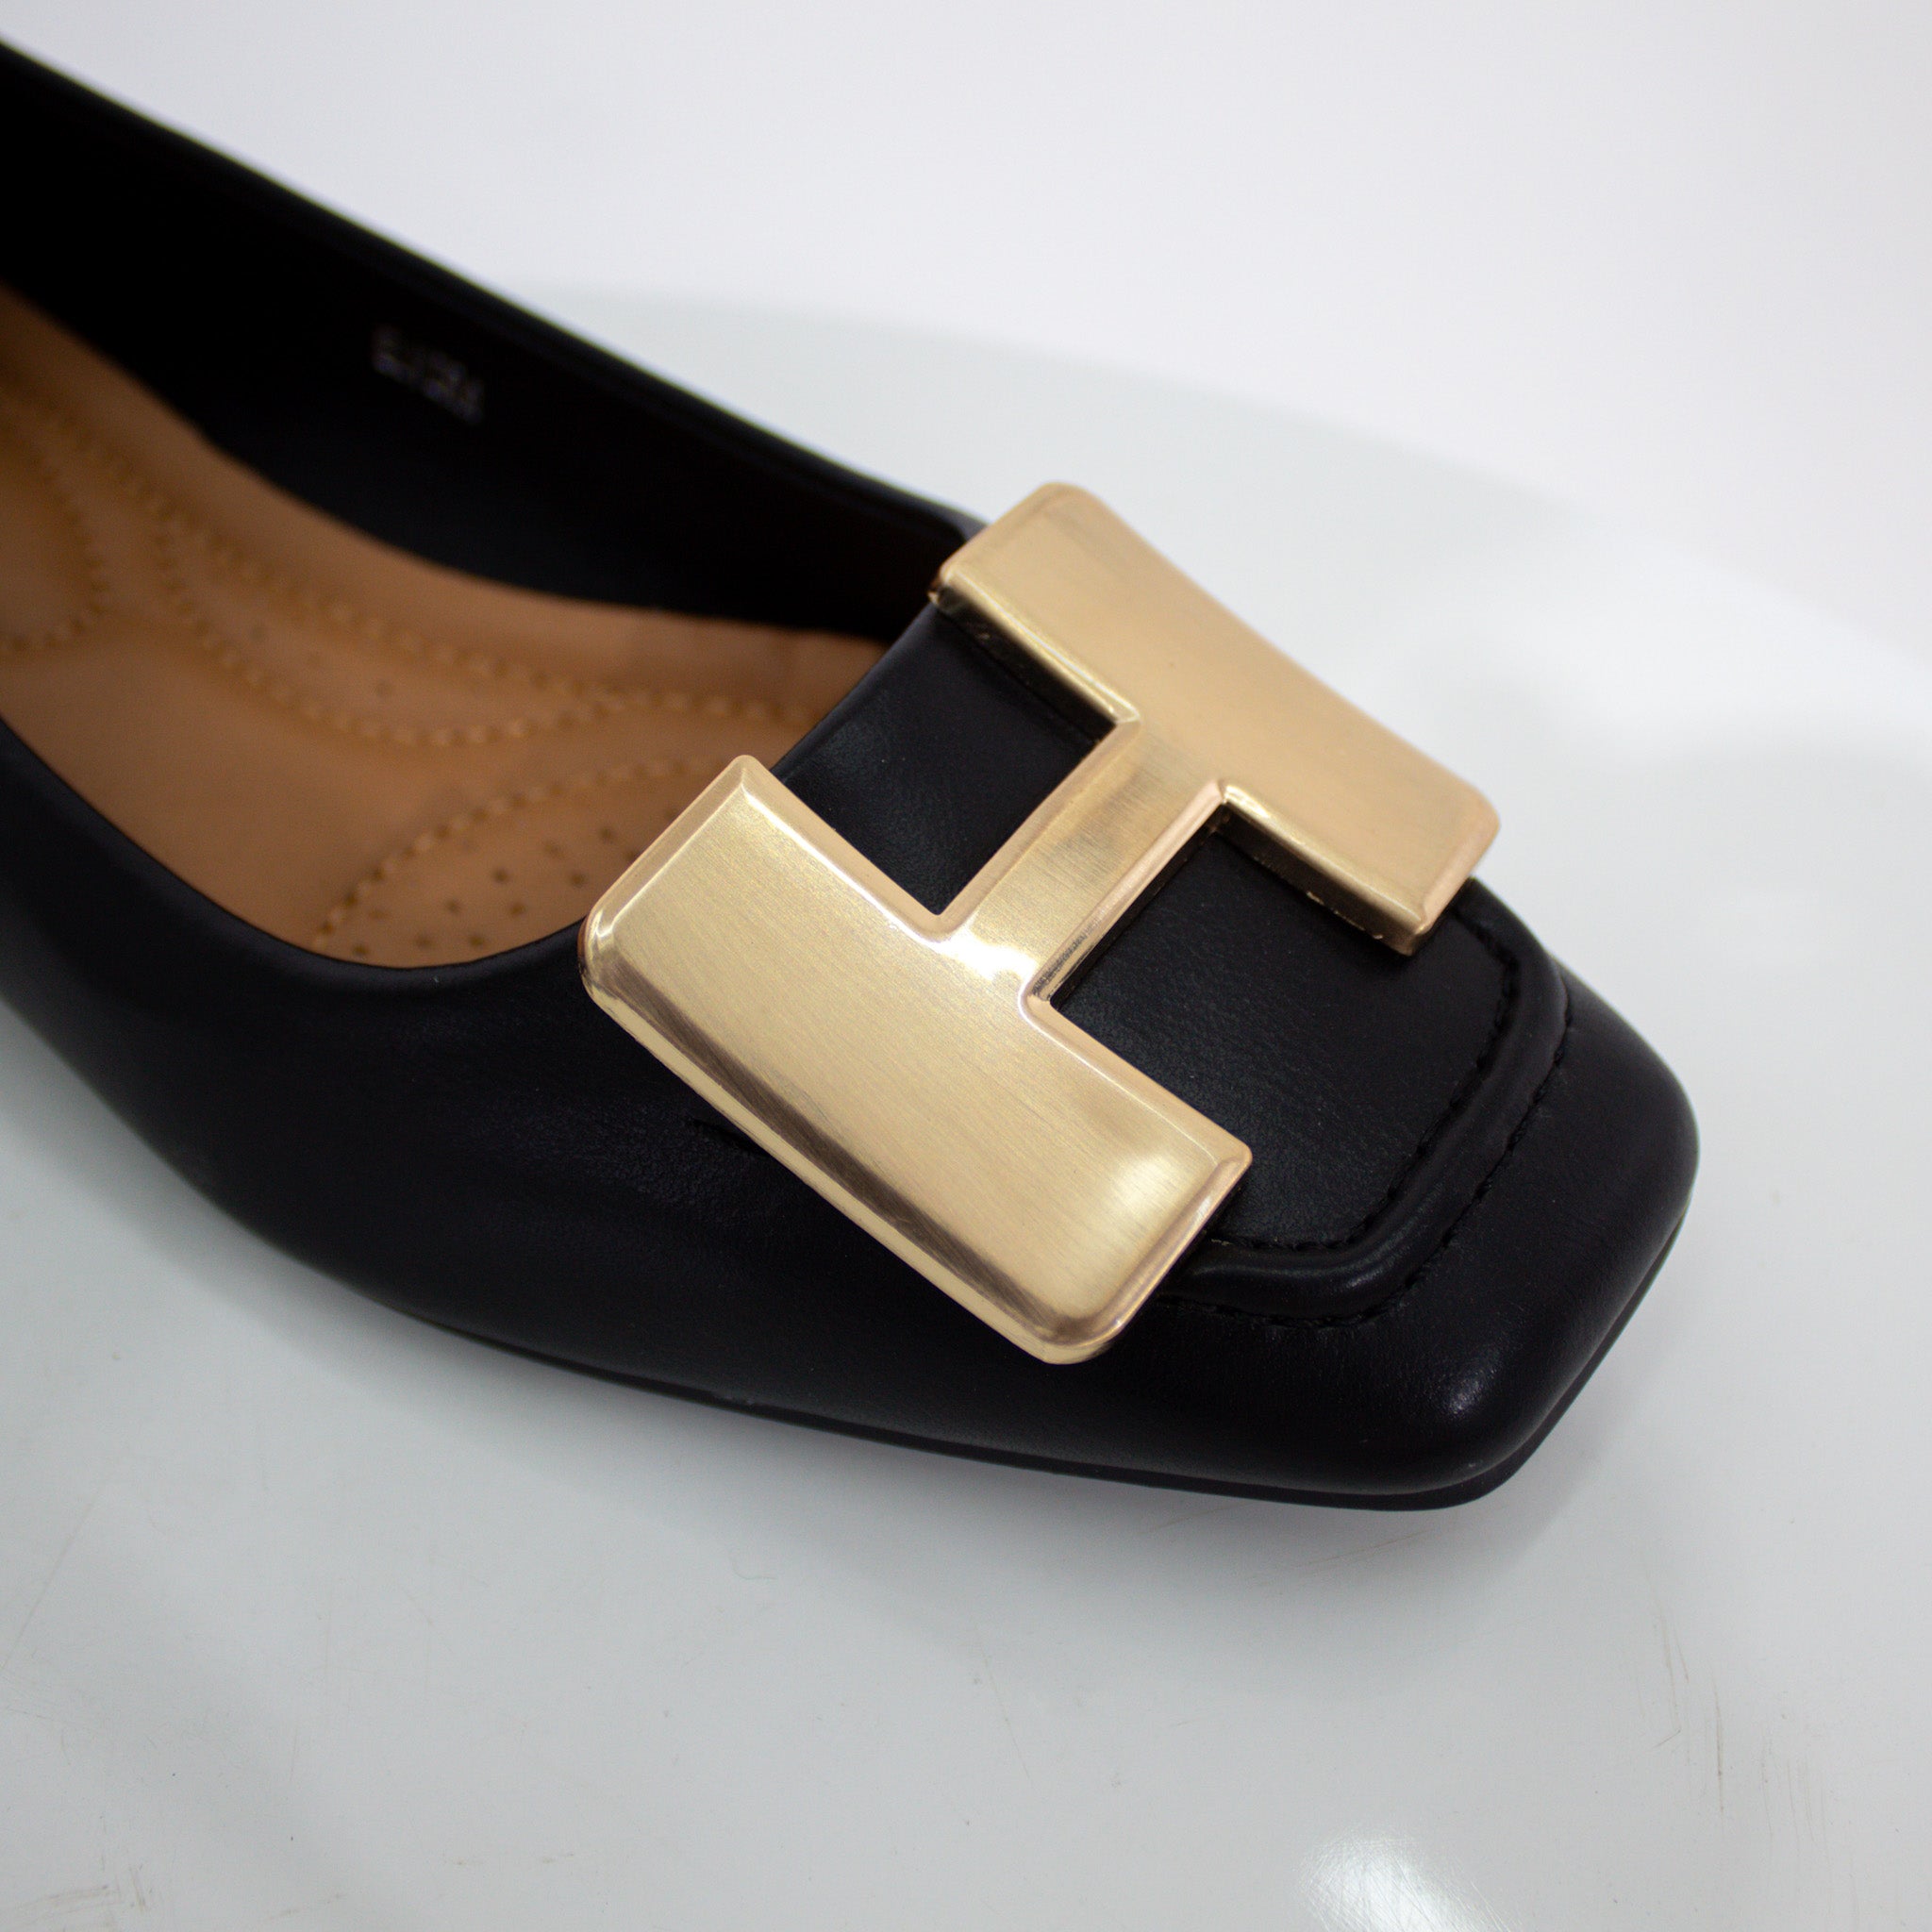 Black gold H-trim faux leather pump shoes alvira